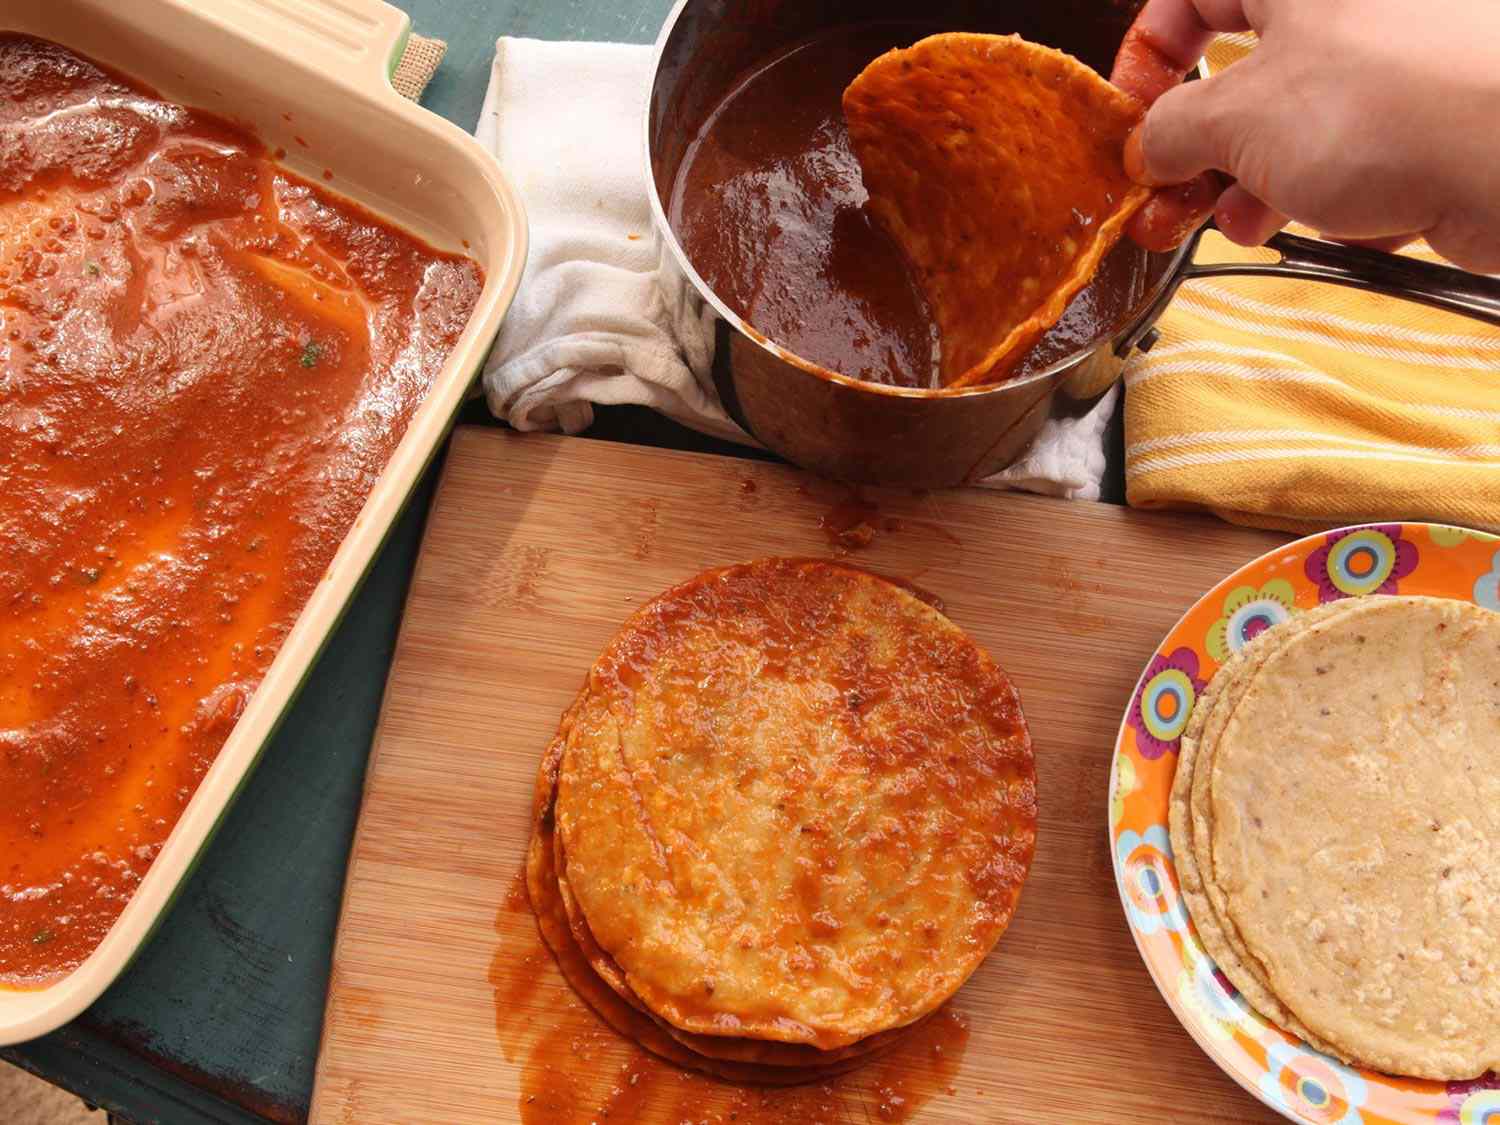 炸好的玉米饼浸在puréed酱汁中，堆叠起来进行最后的组装。